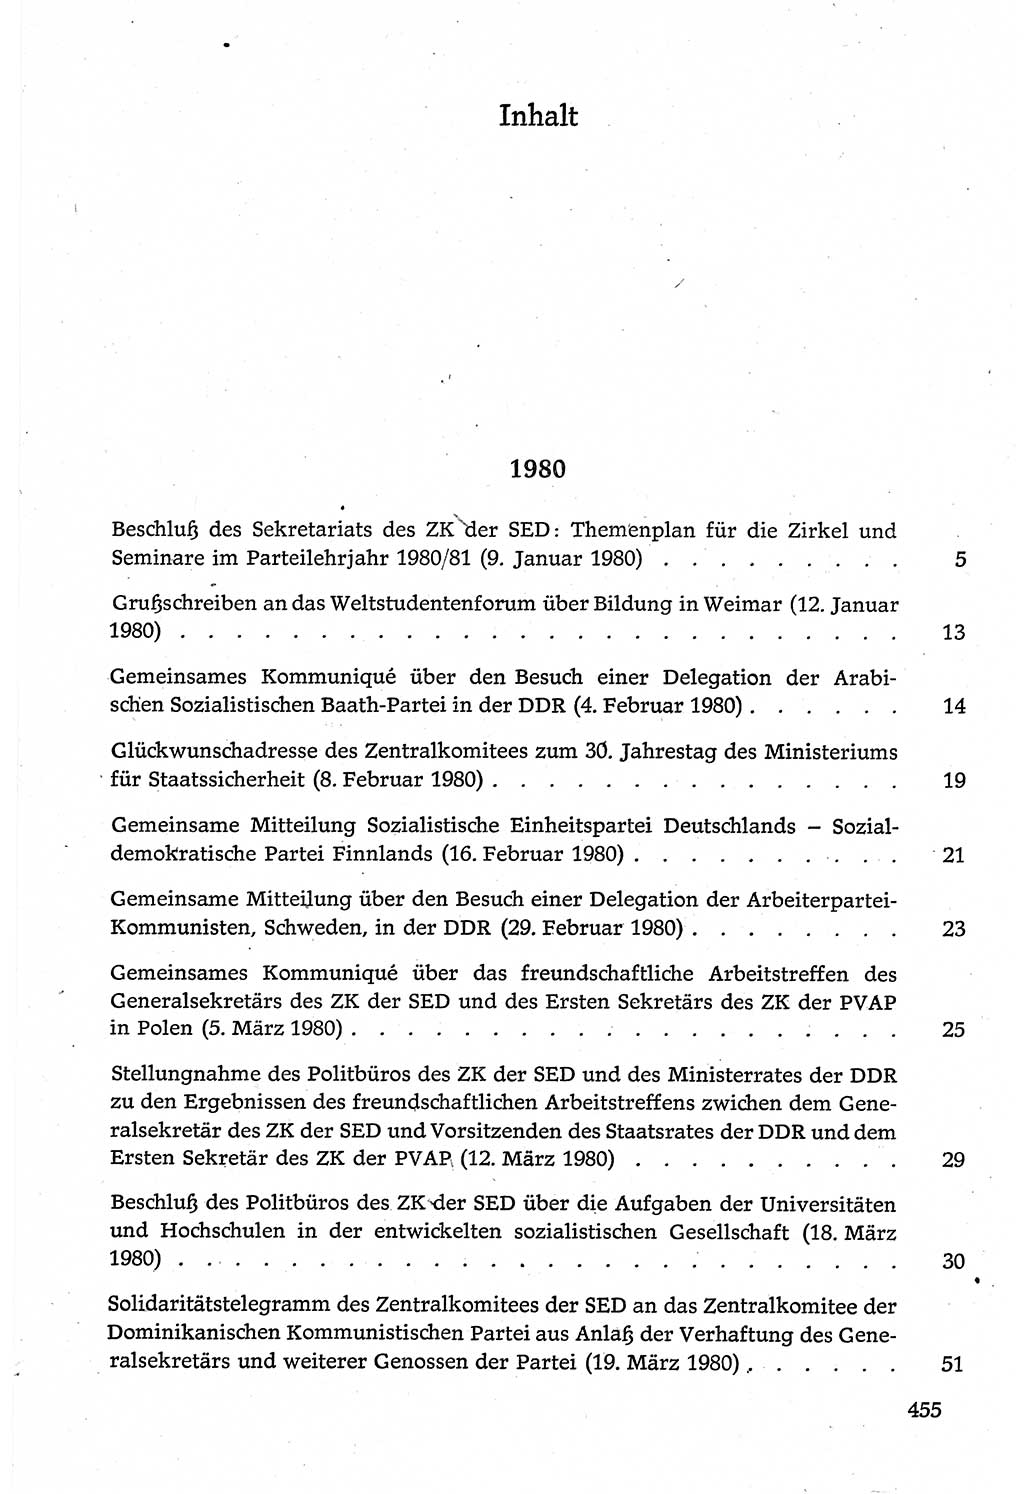 Dokumente der Sozialistischen Einheitspartei Deutschlands (SED) [Deutsche Demokratische Republik (DDR)] 1980-1981, Seite 455 (Dok. SED DDR 1980-1981, S. 455)